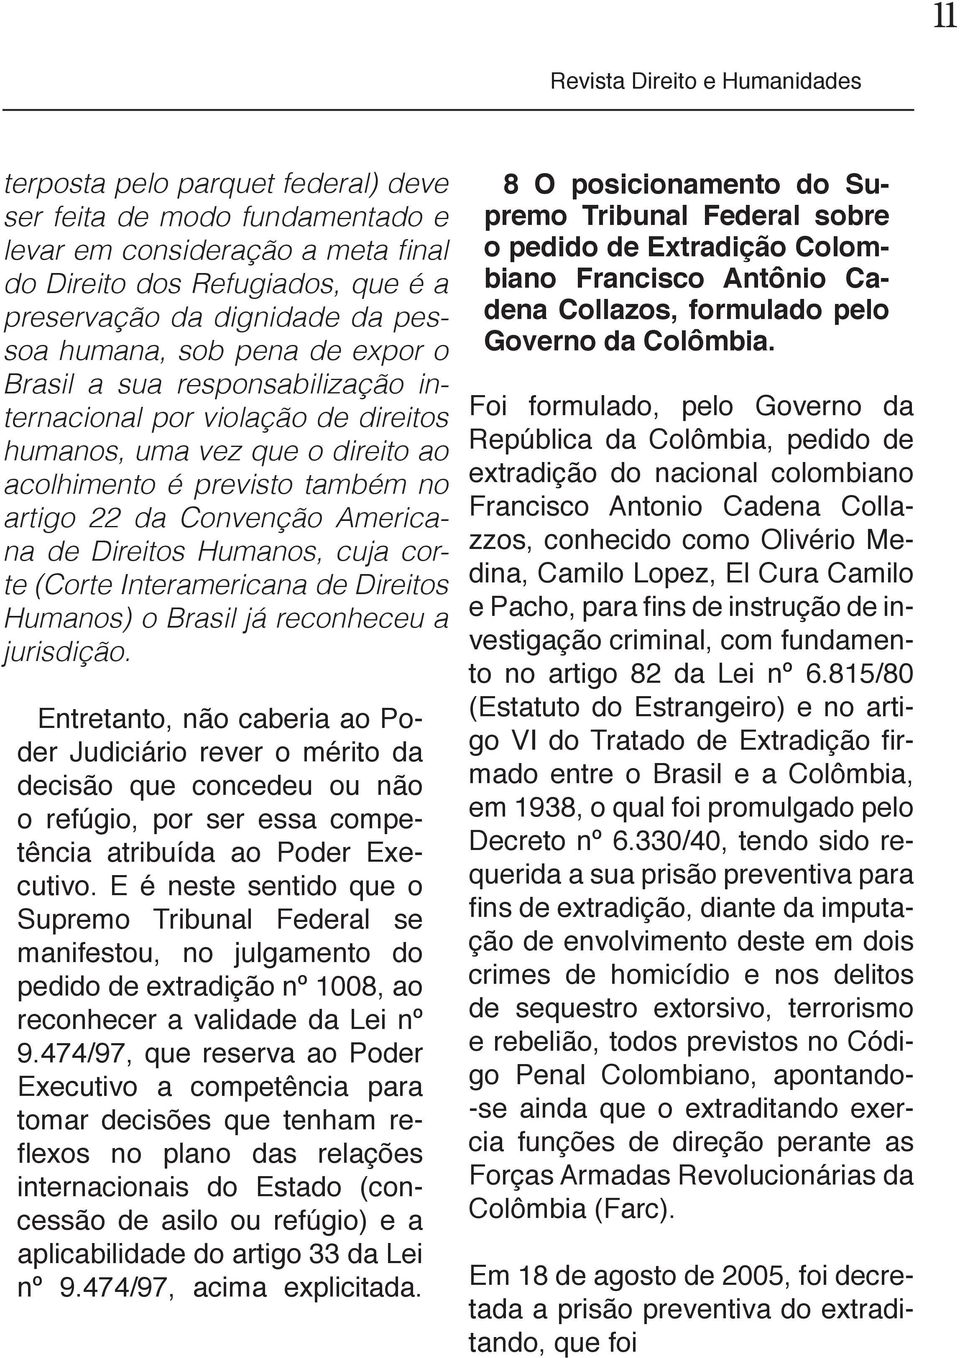 cuja corte (Corte Interamericana de Direitos Humanos) o Brasil já reconheceu a jurisdição.